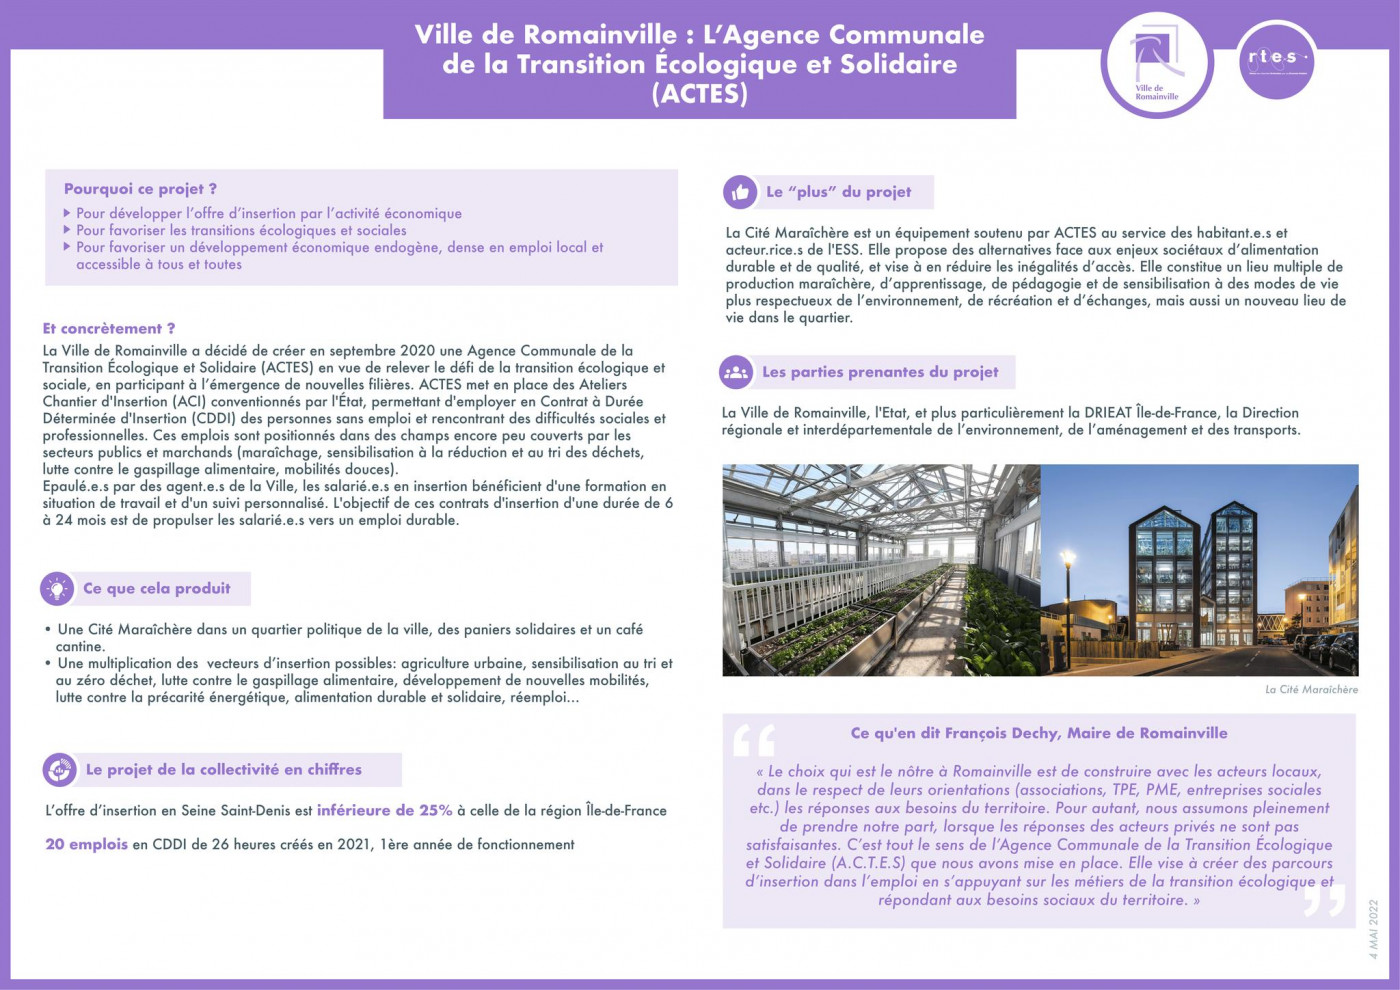 Ville de Romainville : L’Agence Communale de la Transition Écologique et Solidaire (ACTES)